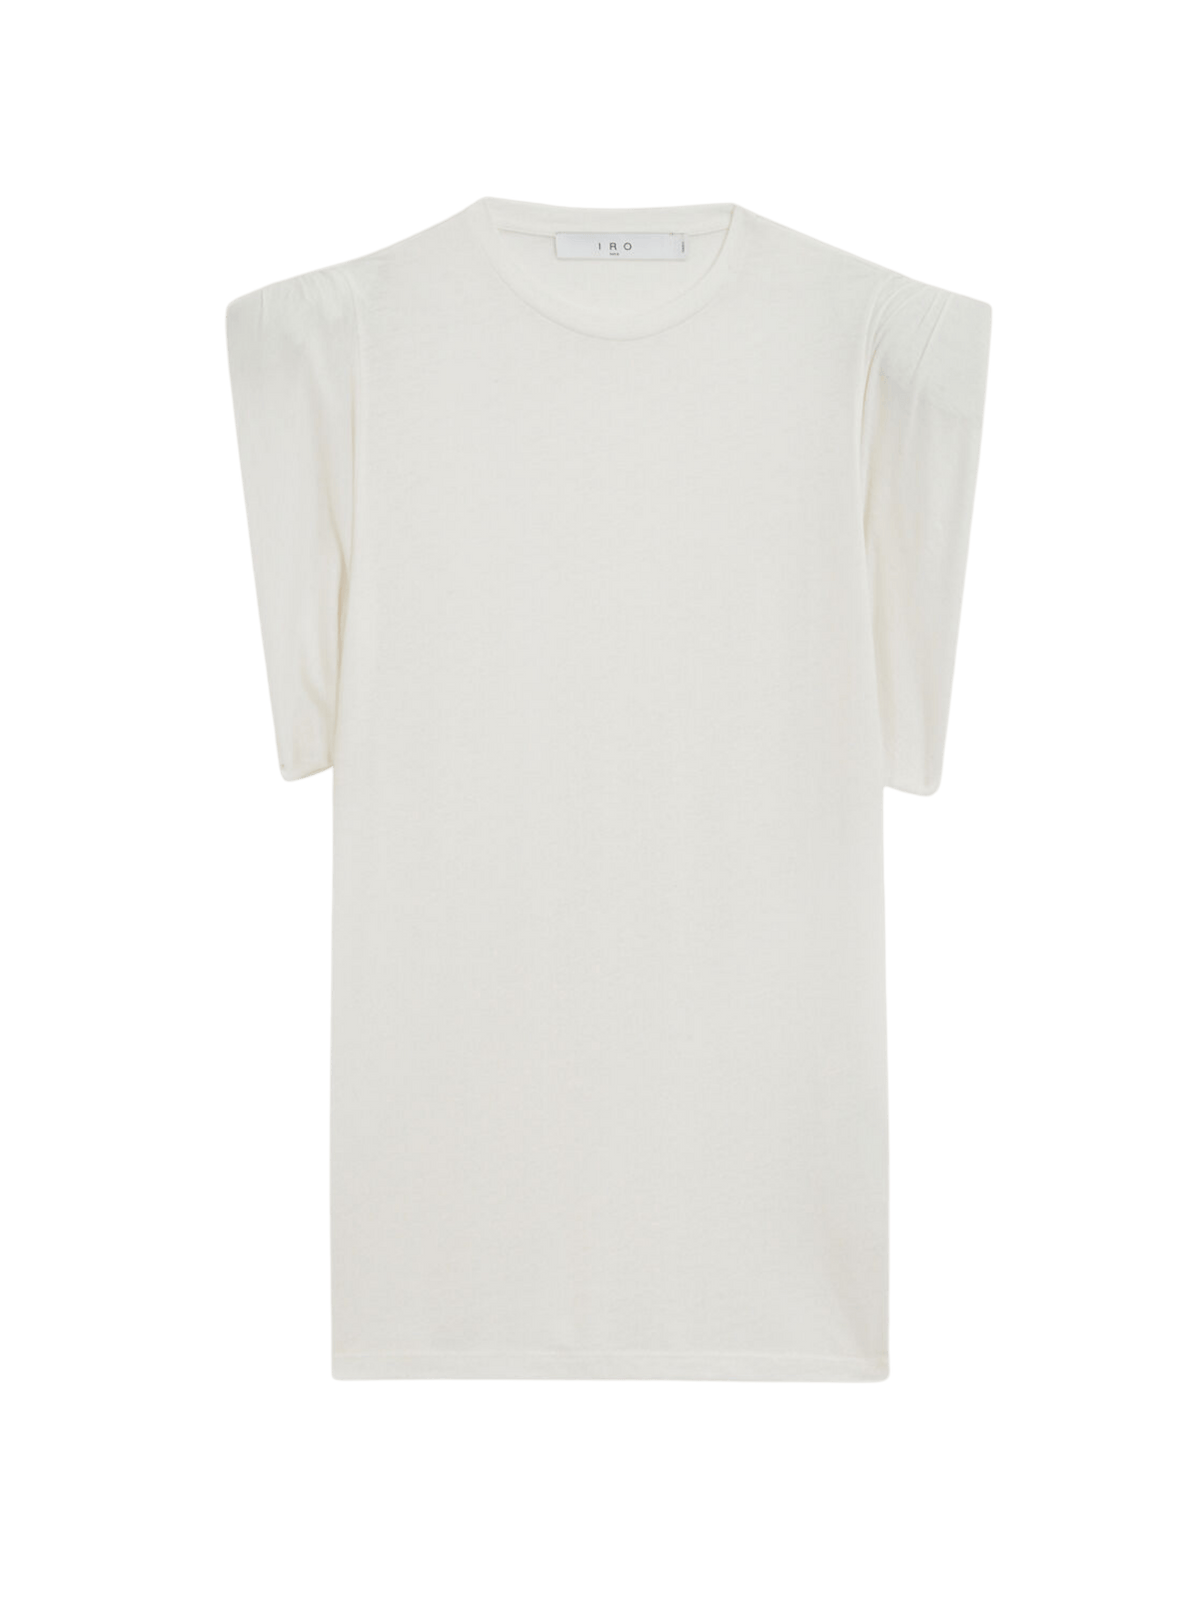 Hamys T-Shirt / White Womens IRO 